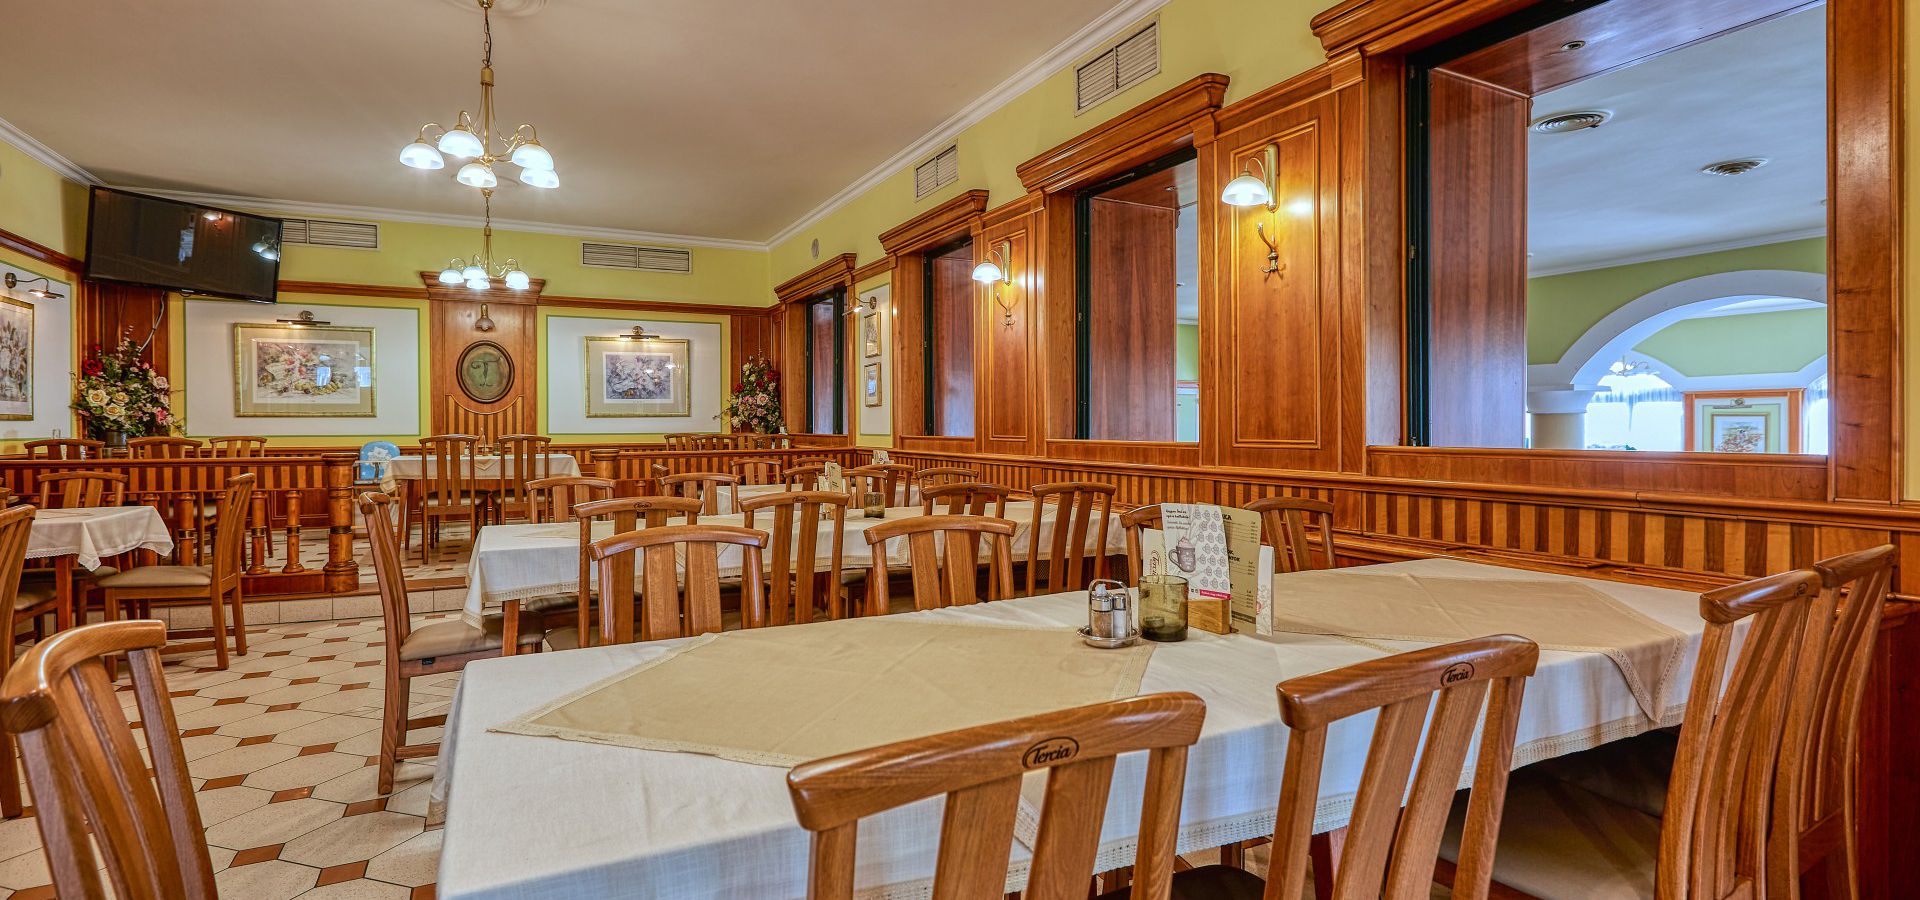 Reservieren Sie einen Tisch im Restaurant Tercia Kópháza!